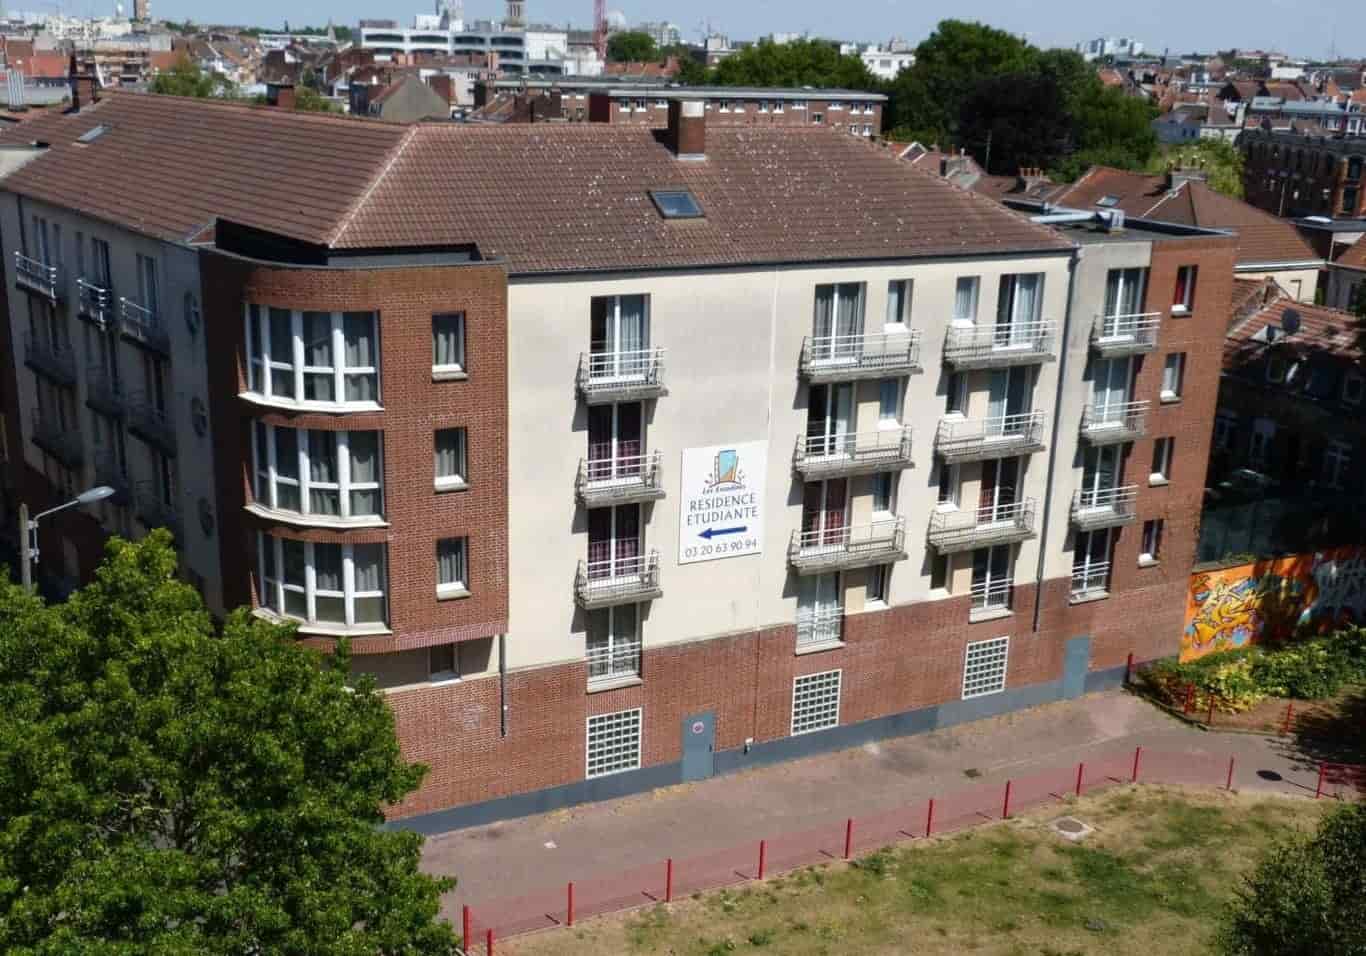 Artois une résidence étudiante à acheter et exploitée par Les Estudines (Réside études) à Lille